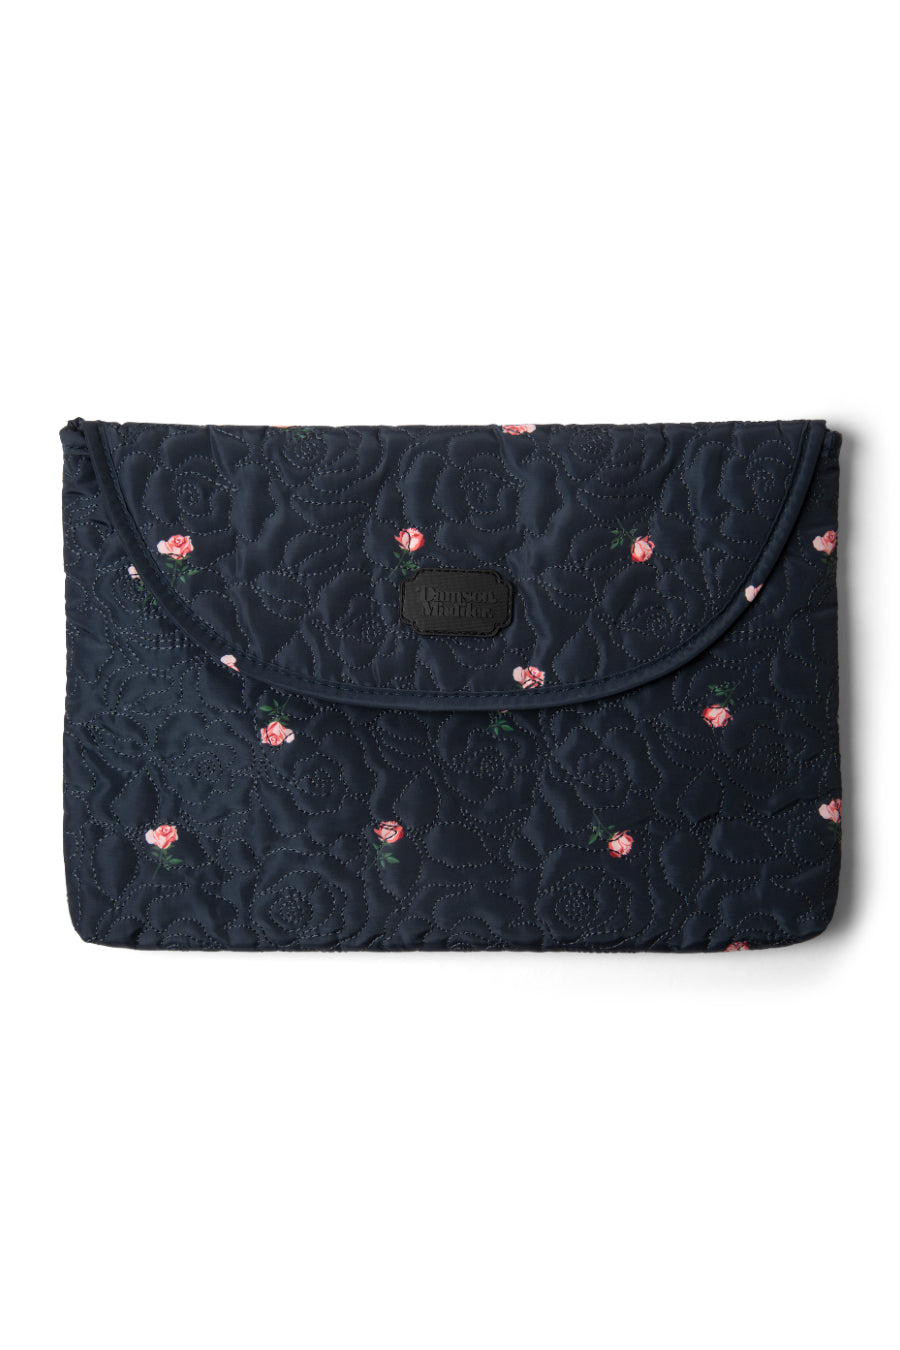 embroidered floral laptop bag